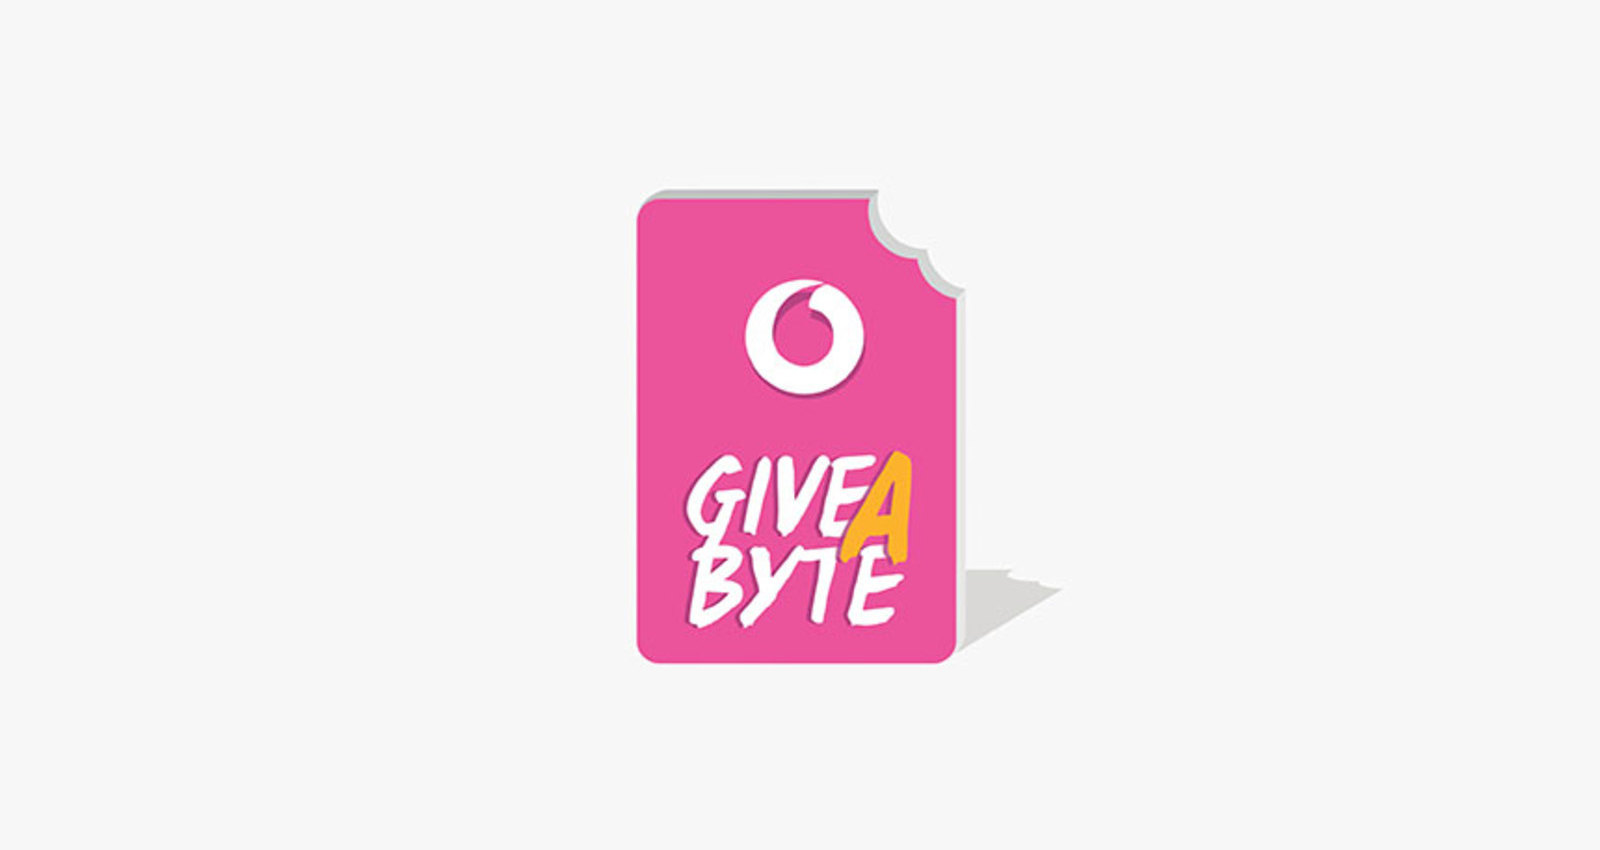 Give A Byte